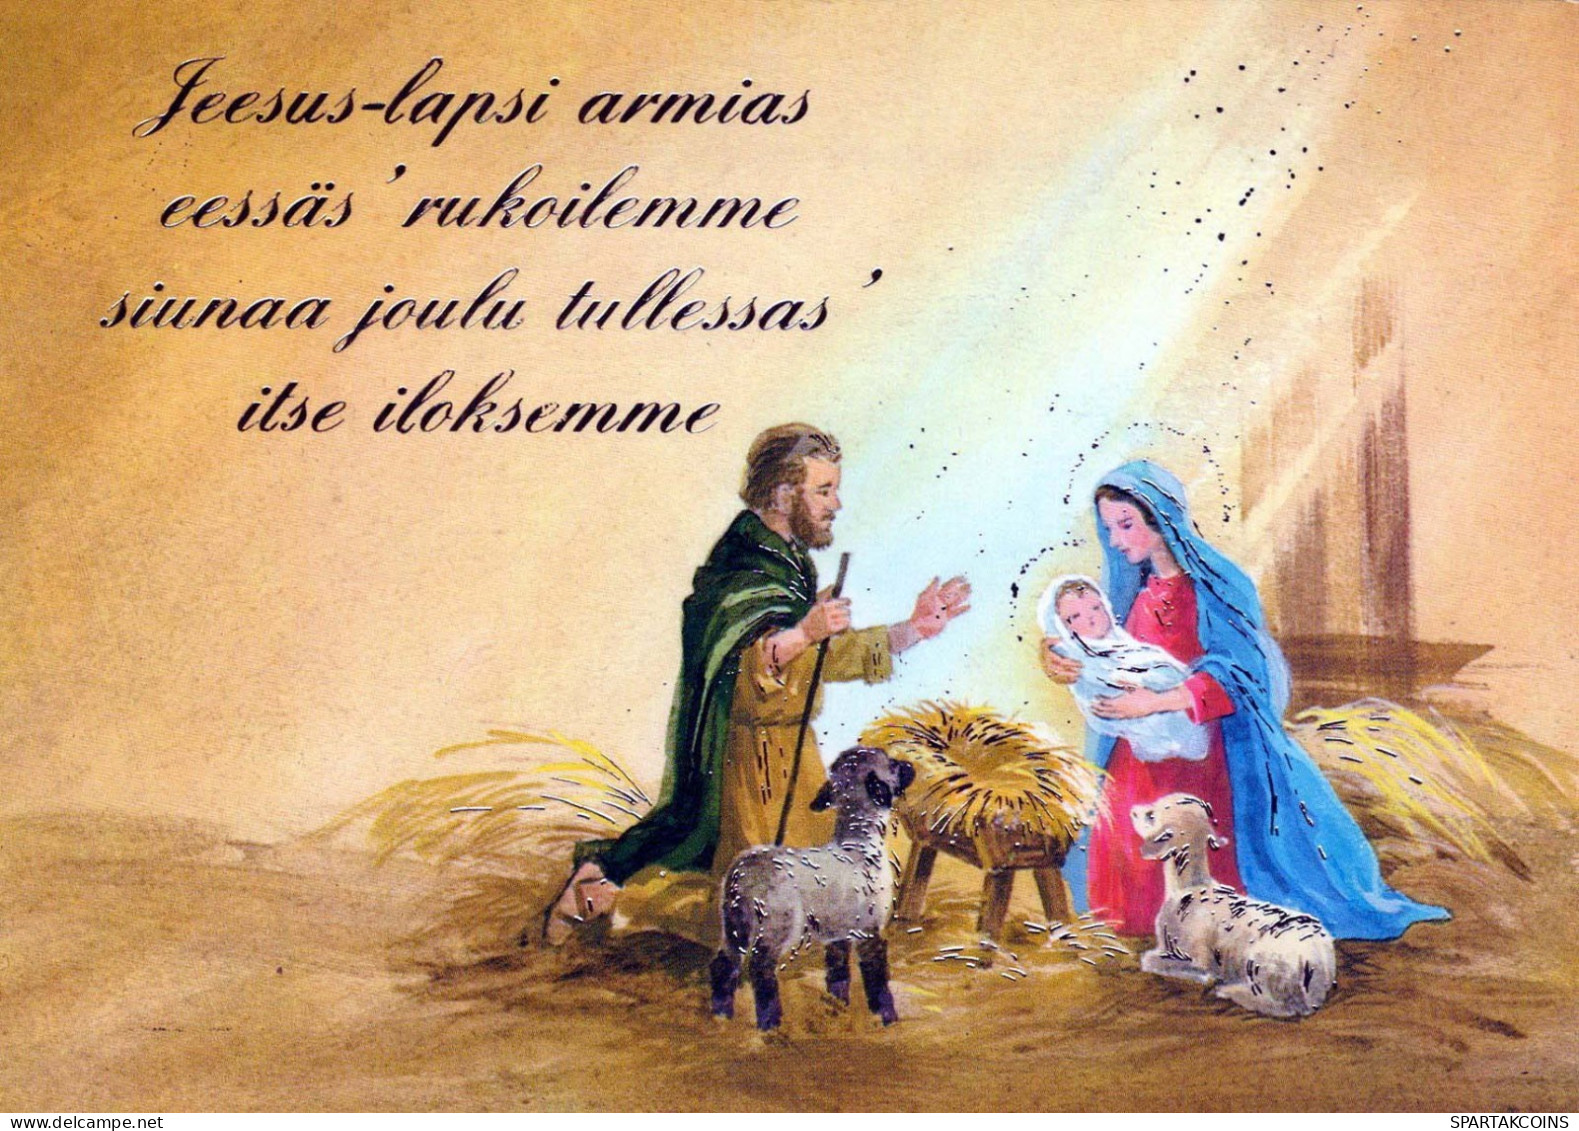 Vierge Marie Madone Bébé JÉSUS Noël Religion #PBB640.A - Vierge Marie & Madones